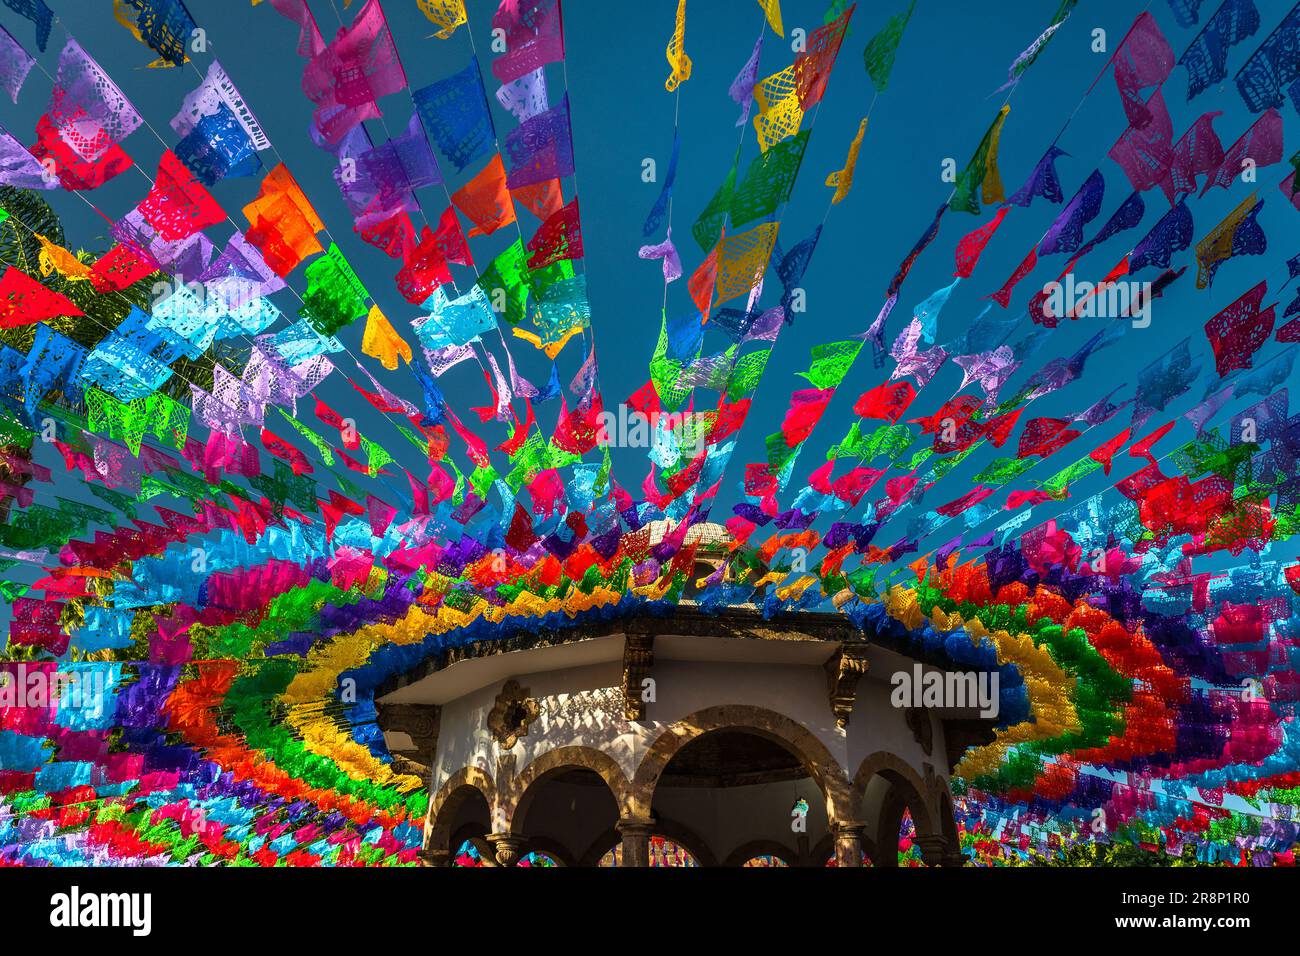 Bandiere di carta pecchiate sono viste attaccate alle linee e appese sopra la piazza con una bandstand durante il giorno dei morti festeggiamenti a Tlaquepaque, Messico. Foto Stock